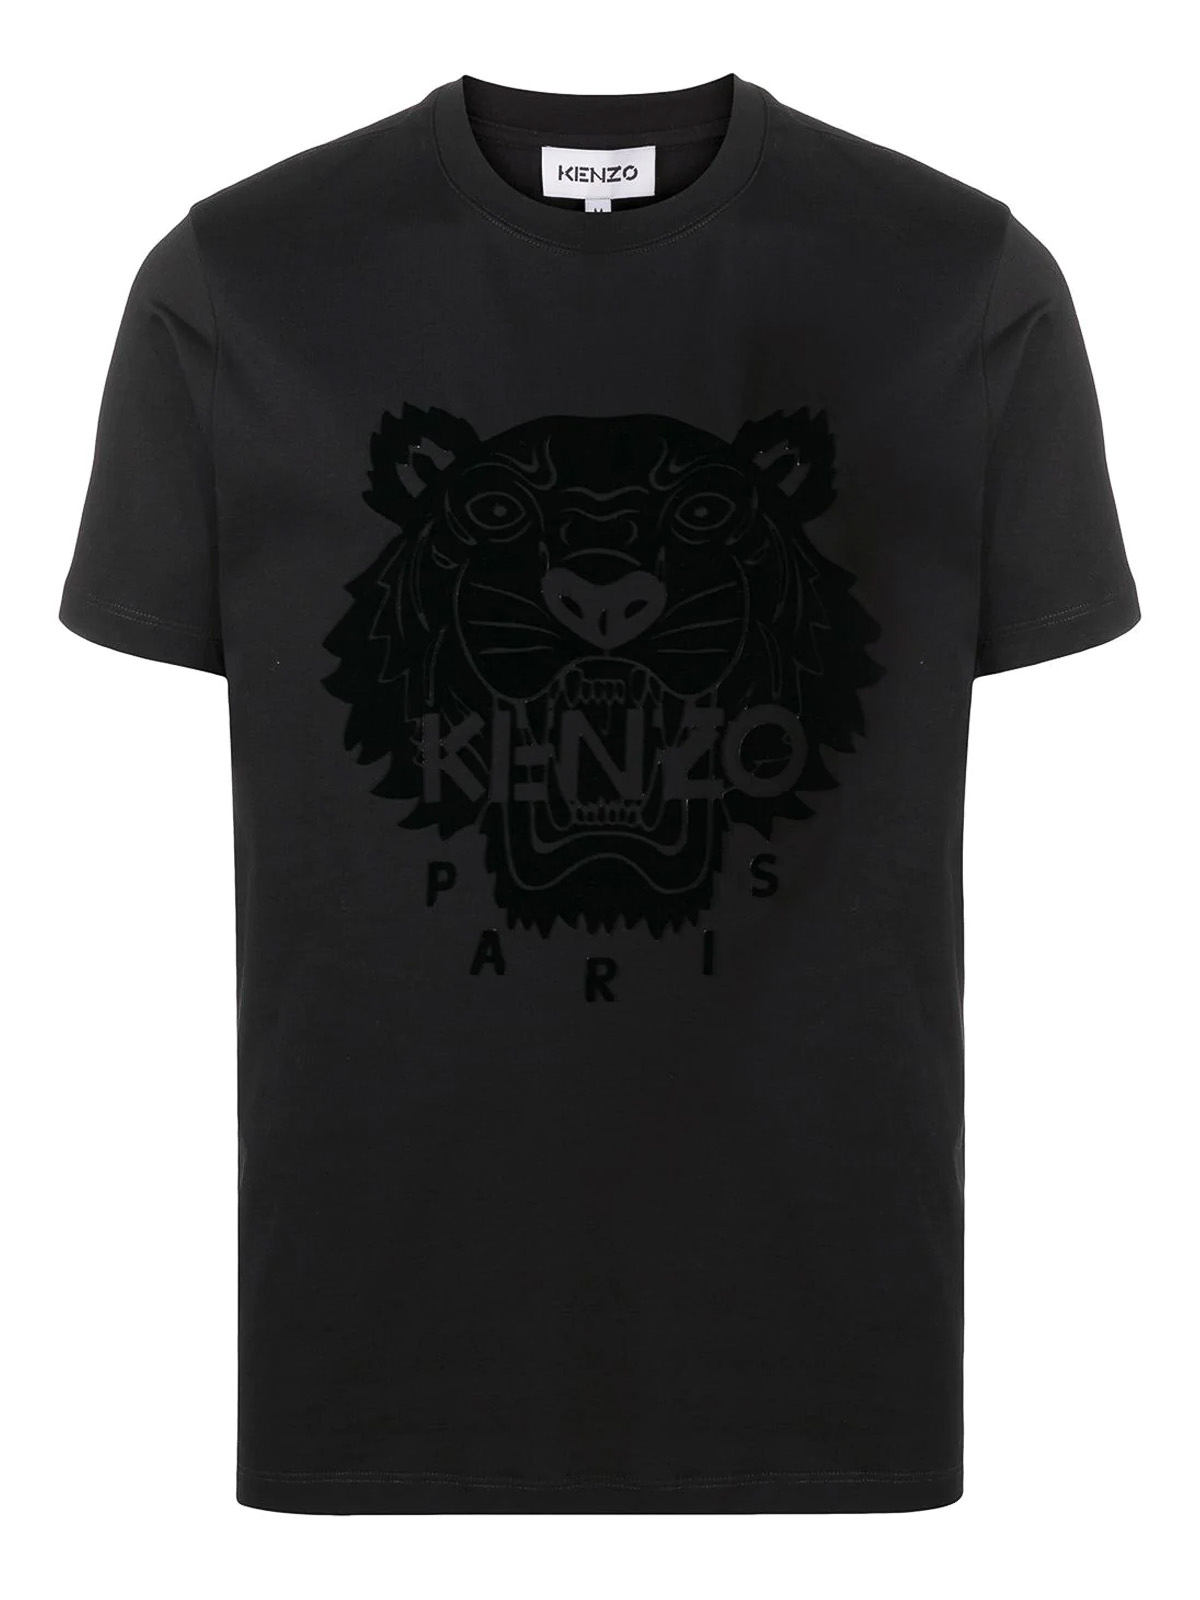 kenzo shop online